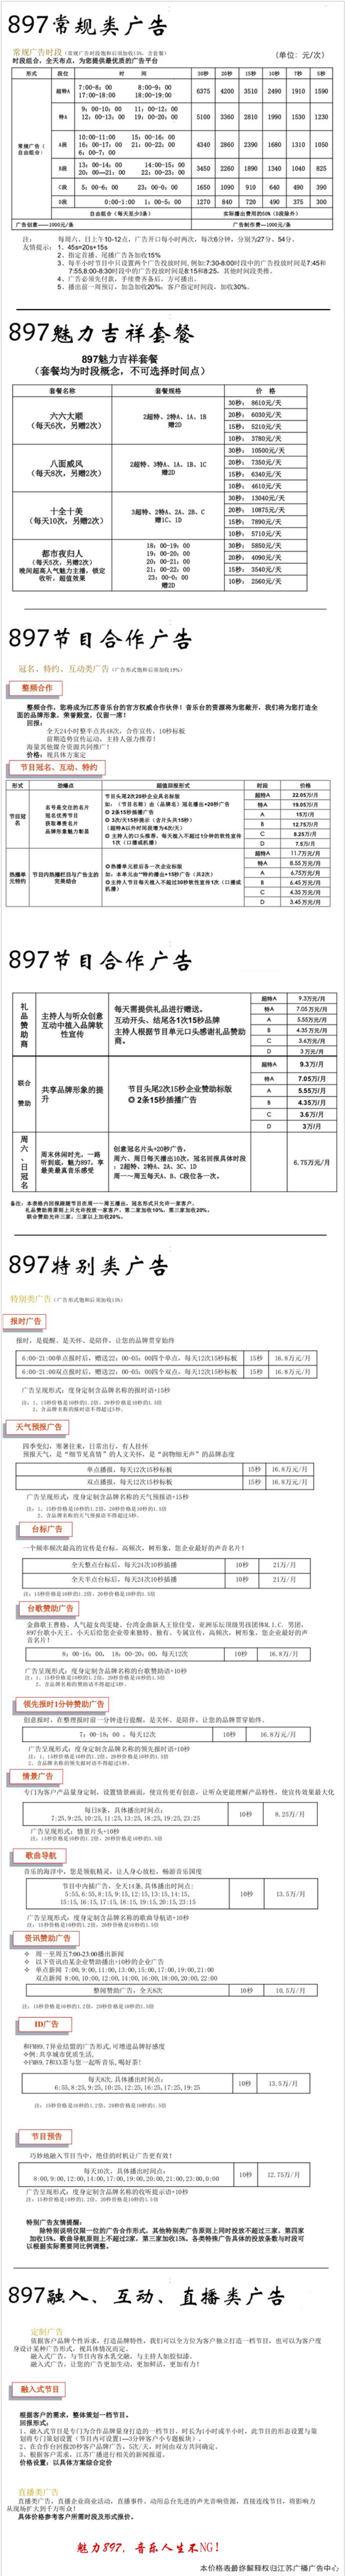 2012江苏人民广播电台音乐频率City FM89.7广告报价表.png